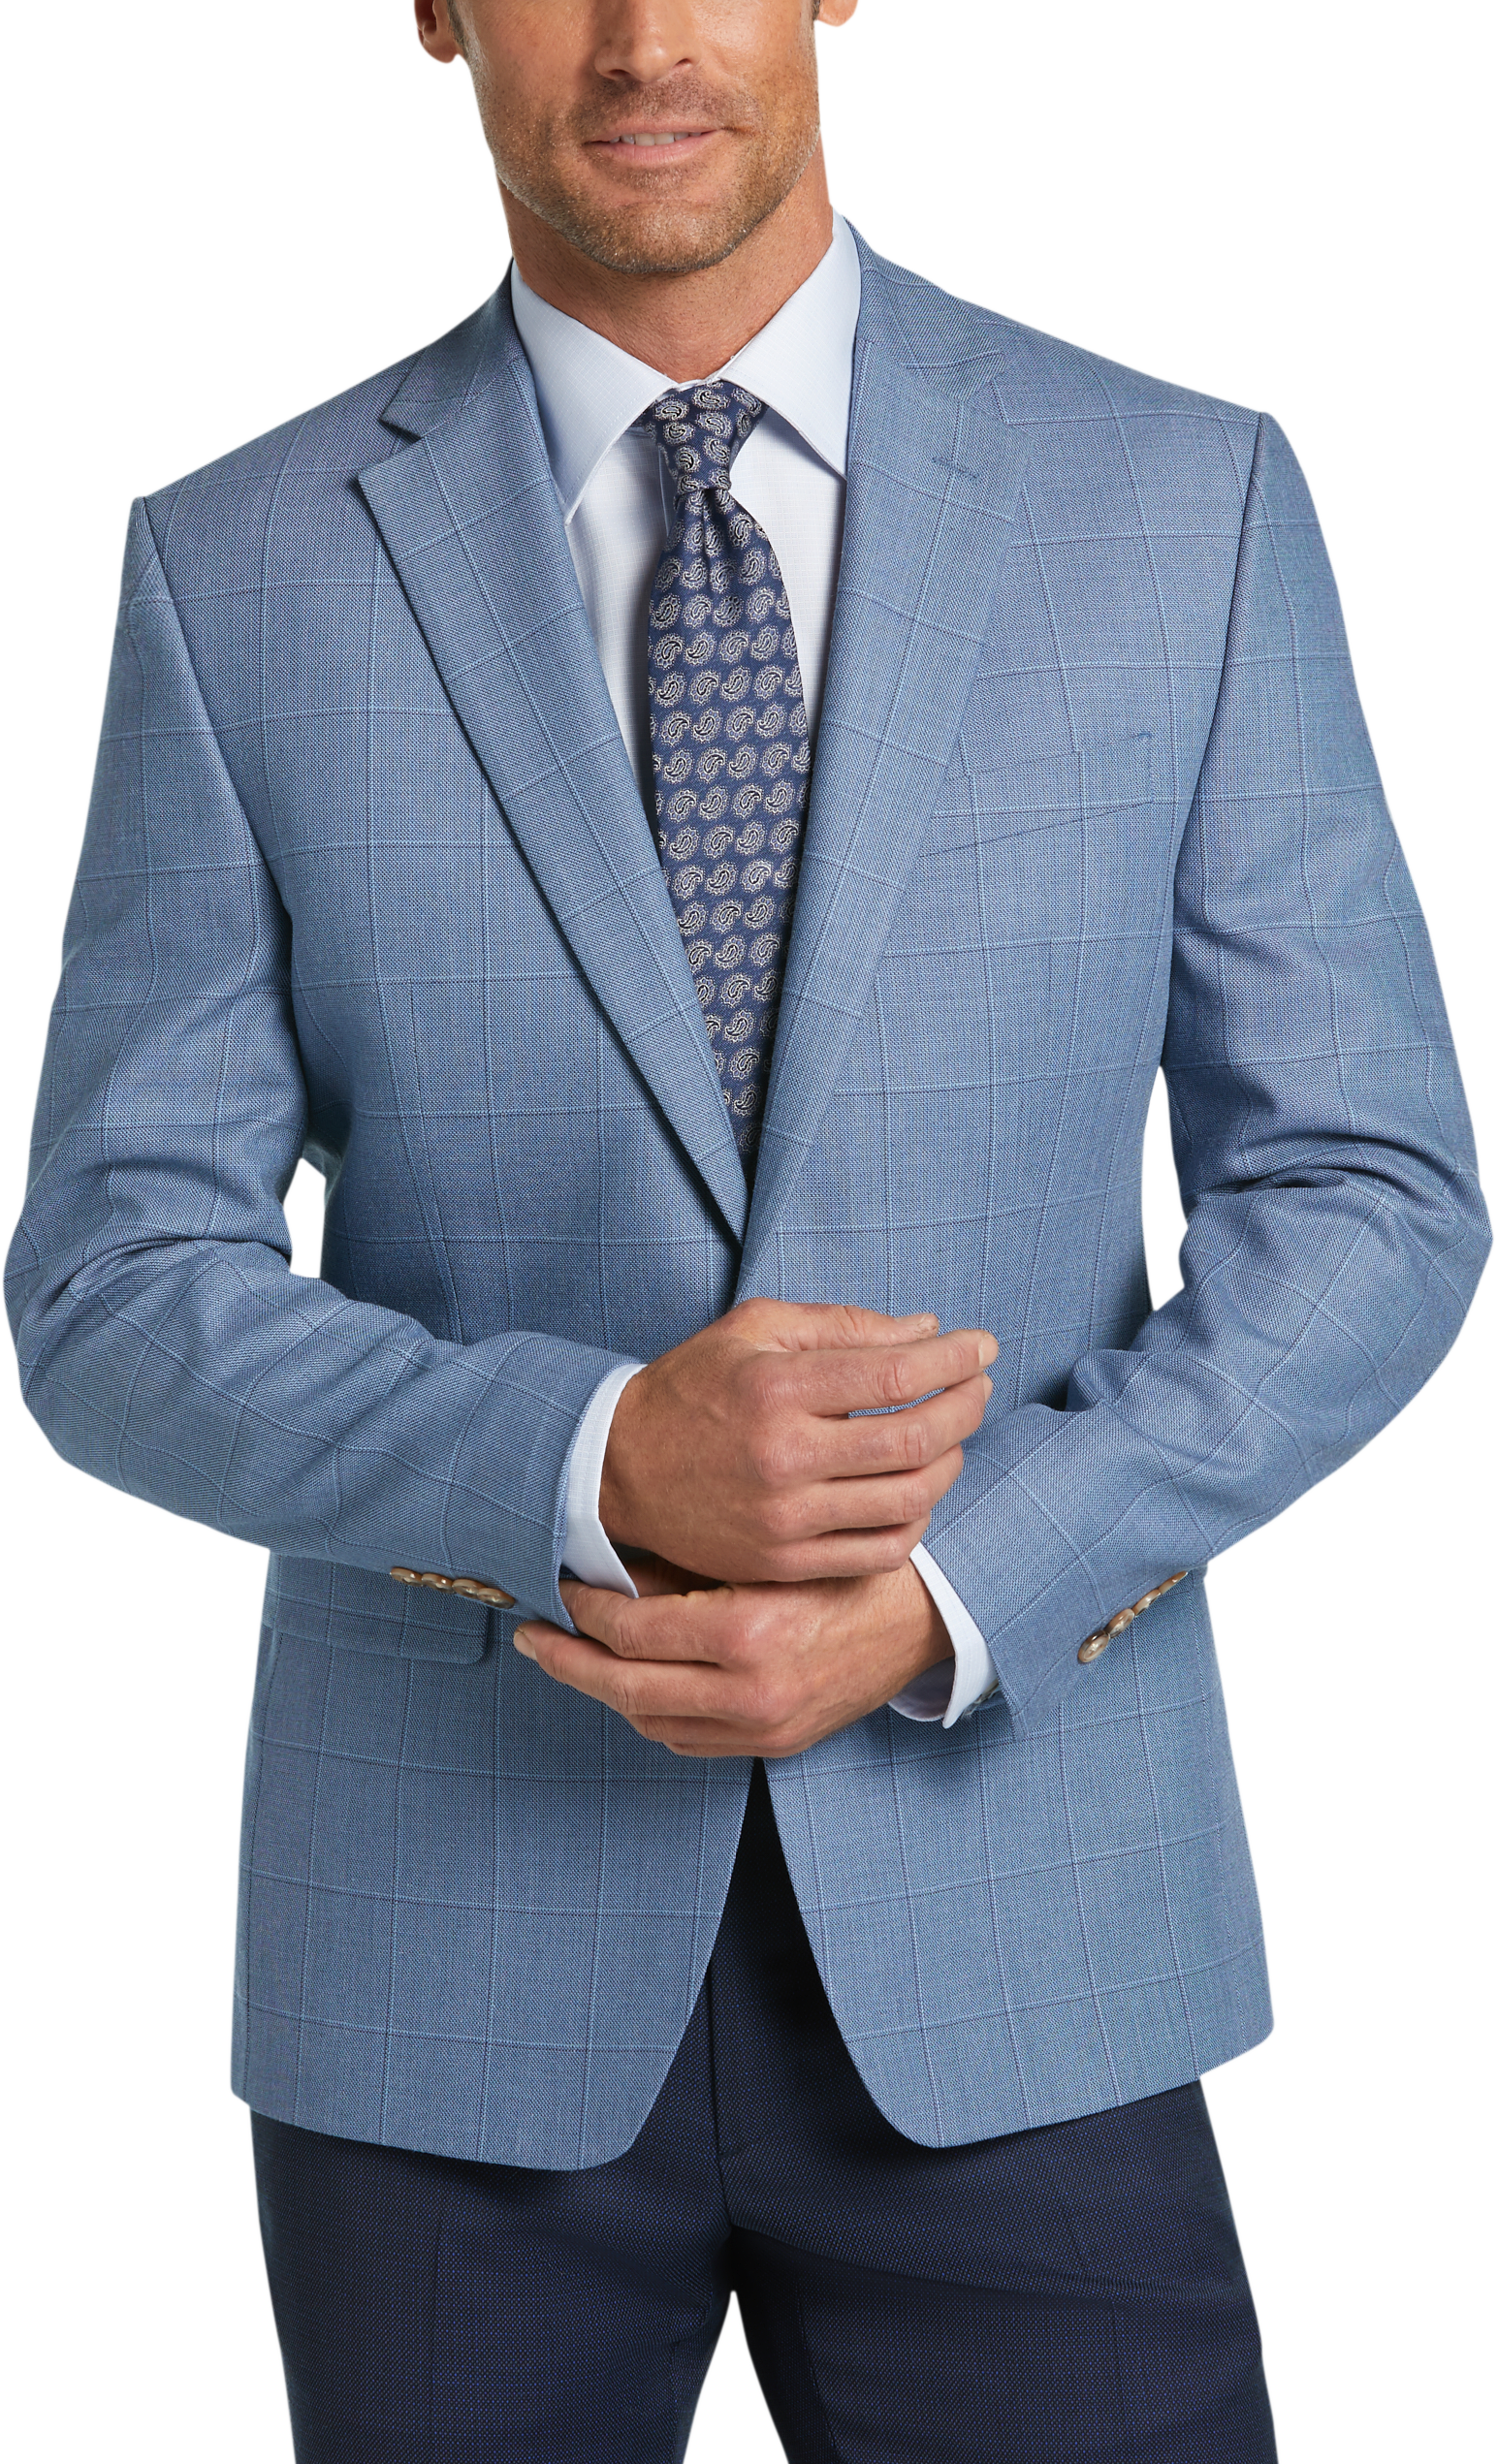 lauren by ralph lauren blue classic fit suit